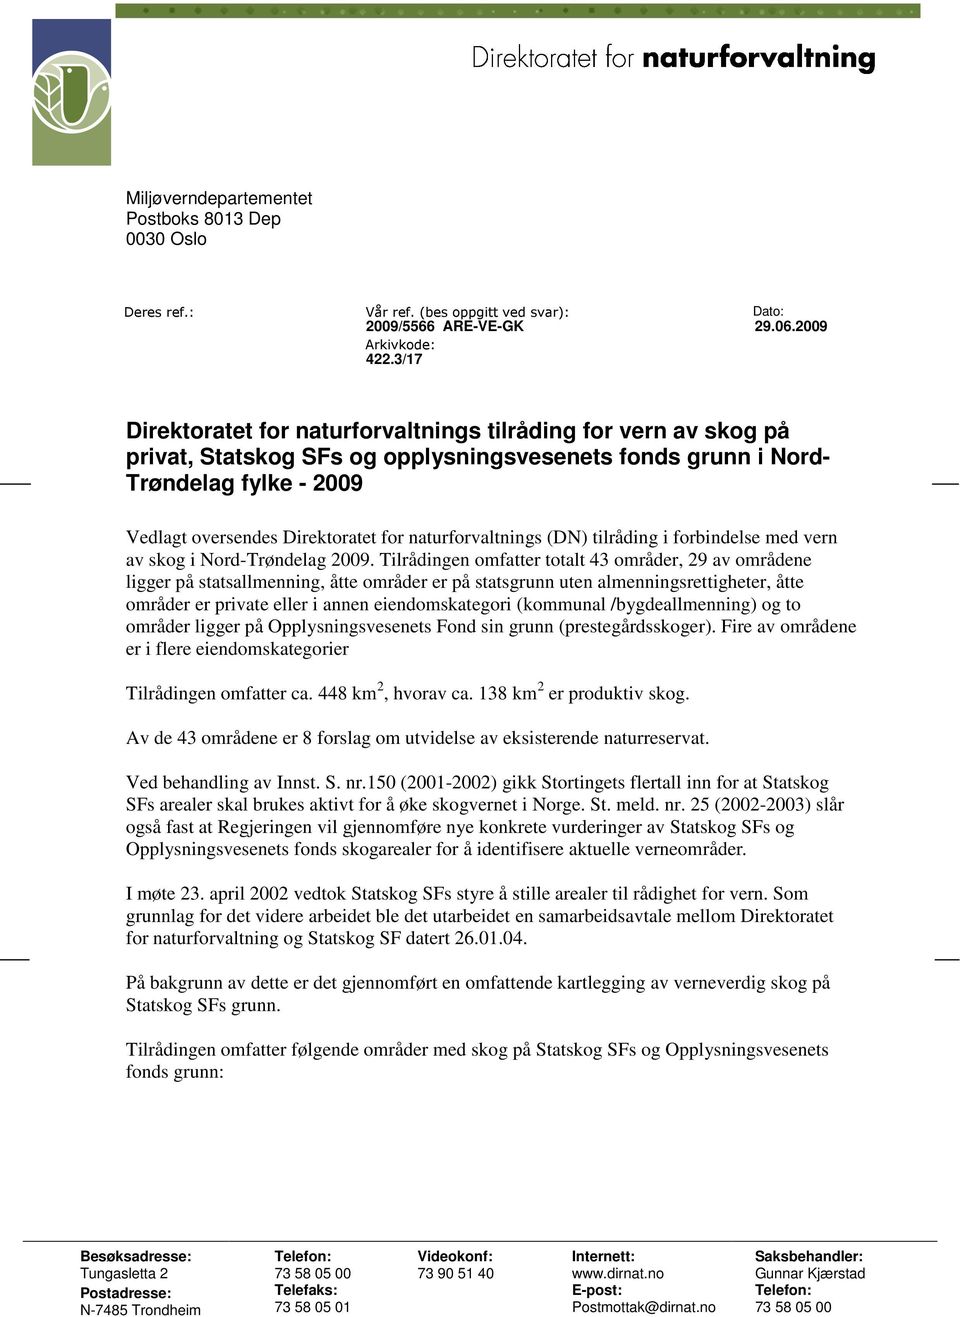 naturforvaltnings (DN) tilråding i forbindelse med vern av skog i Nord-Trøndelag 2009.